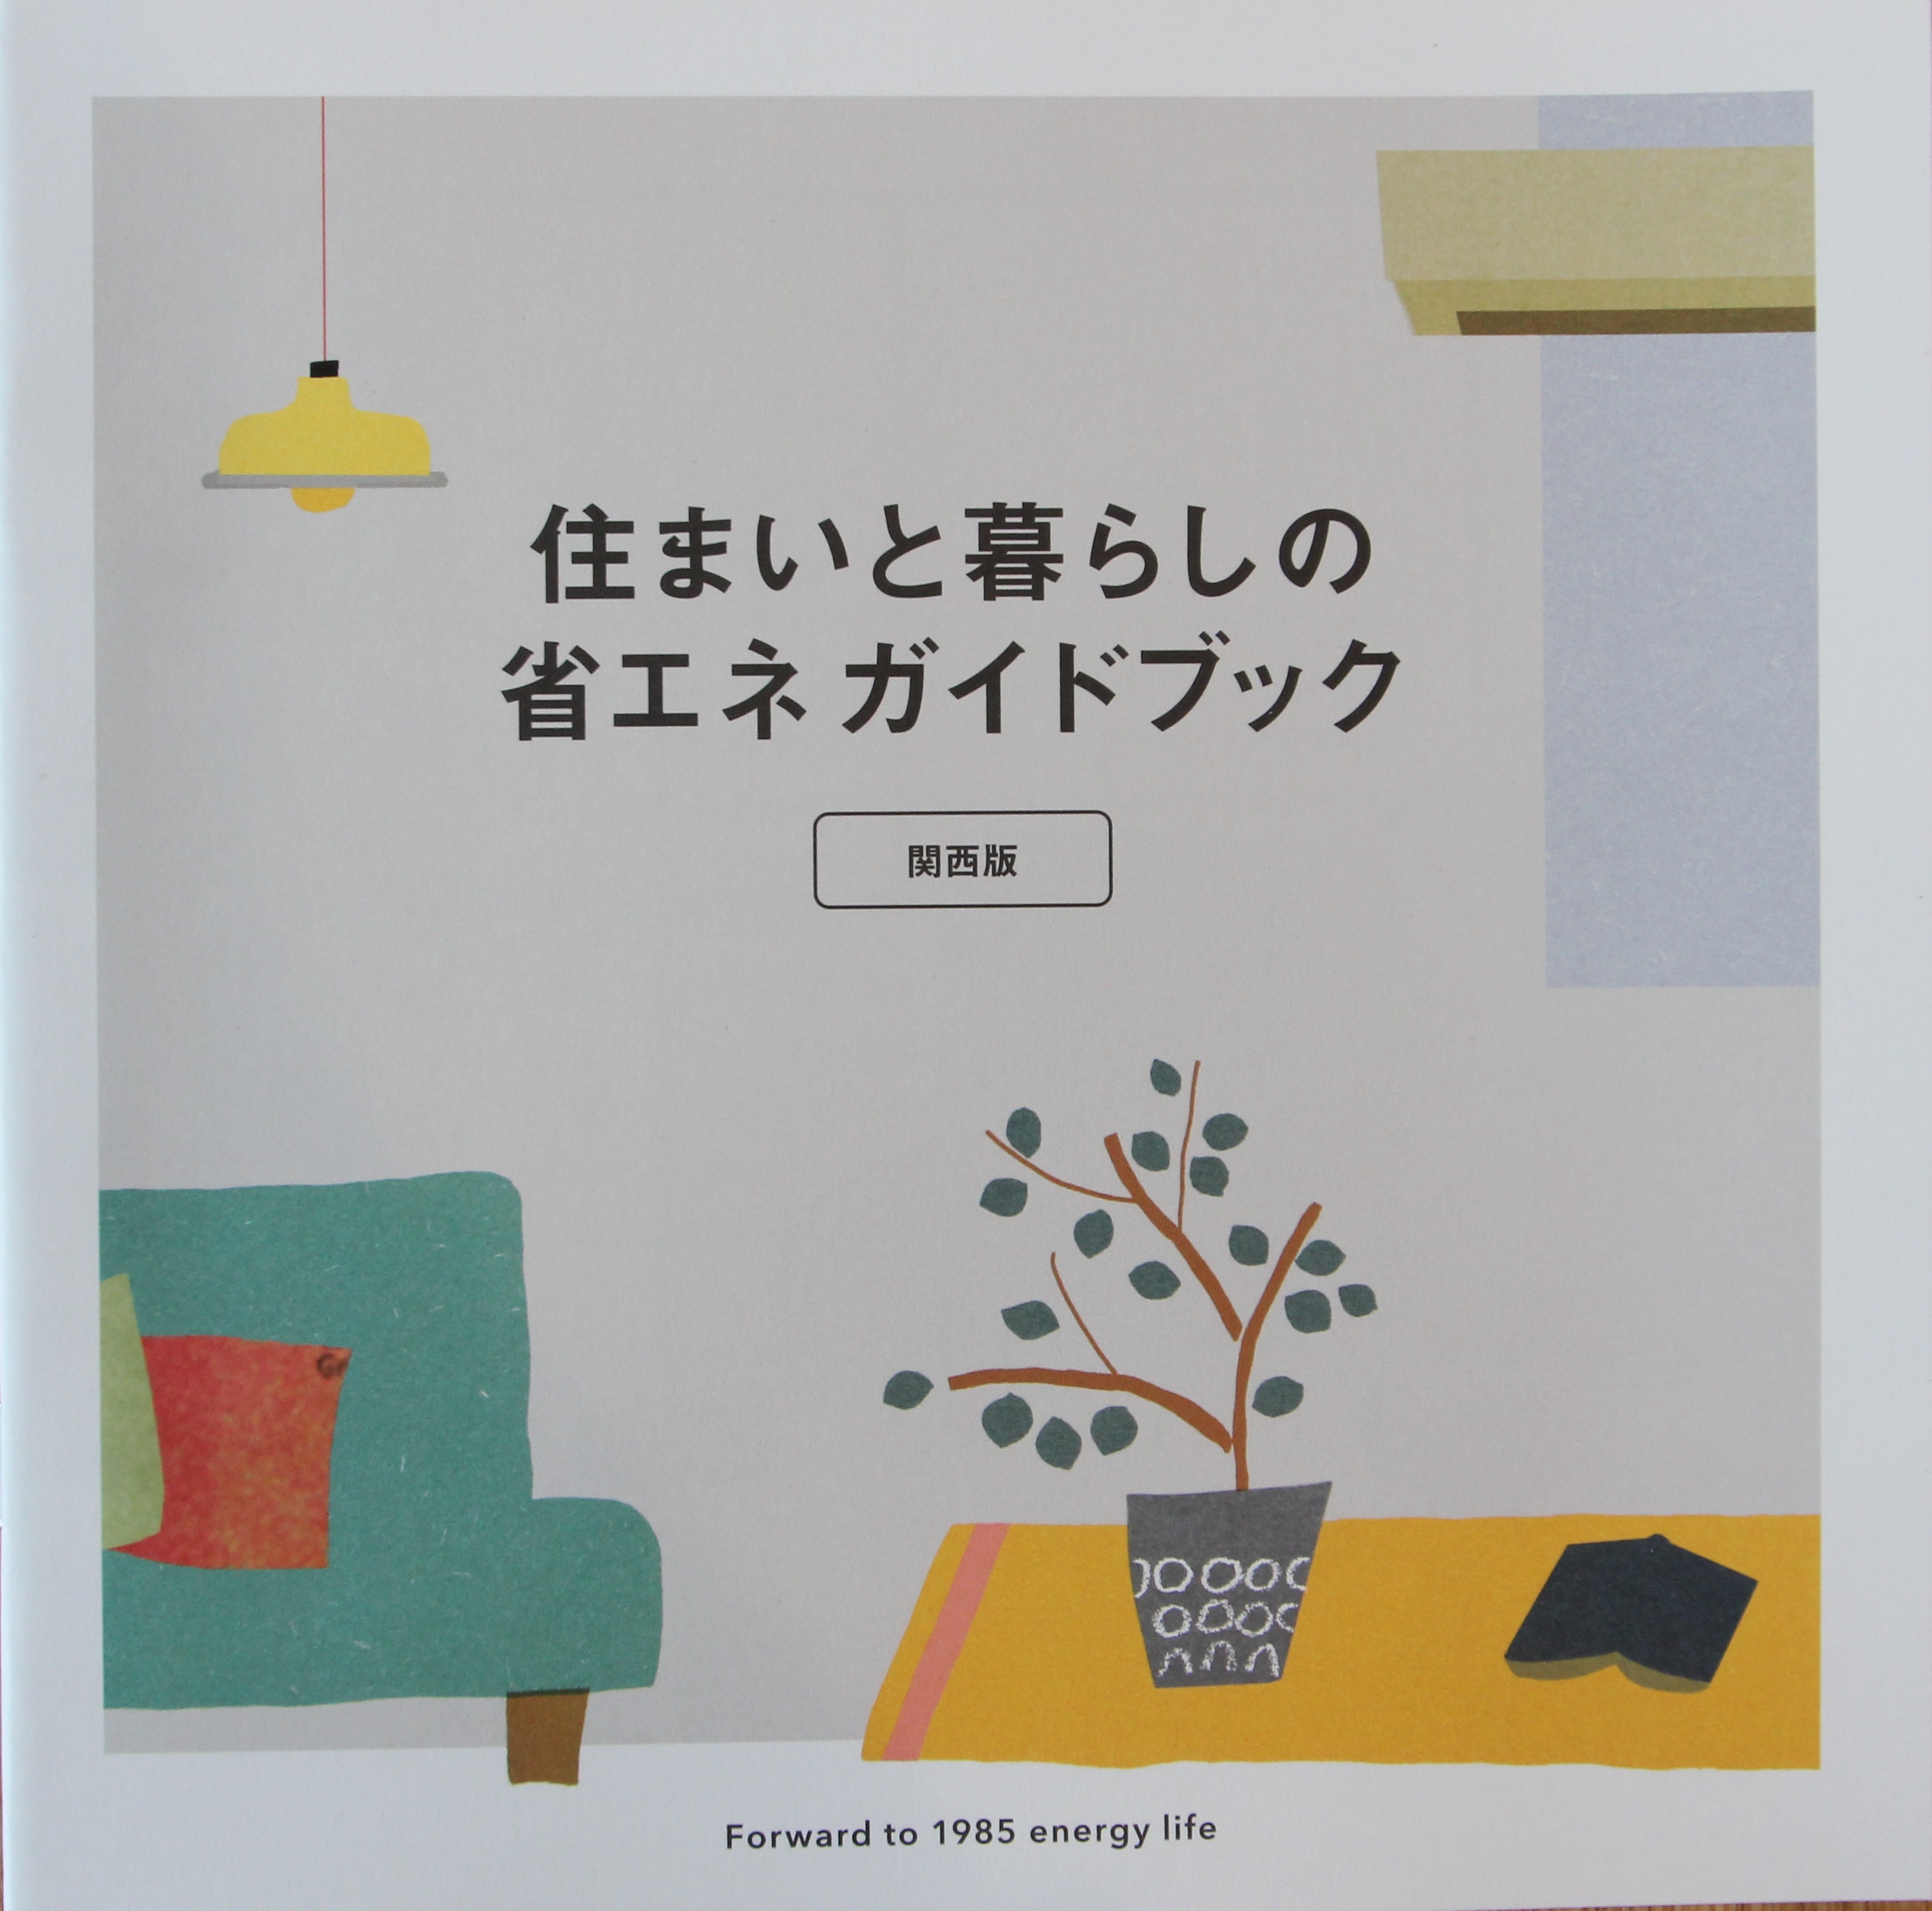 奈良の注文住宅の会社平野木材の「Forward to 1985 energy life」絵本